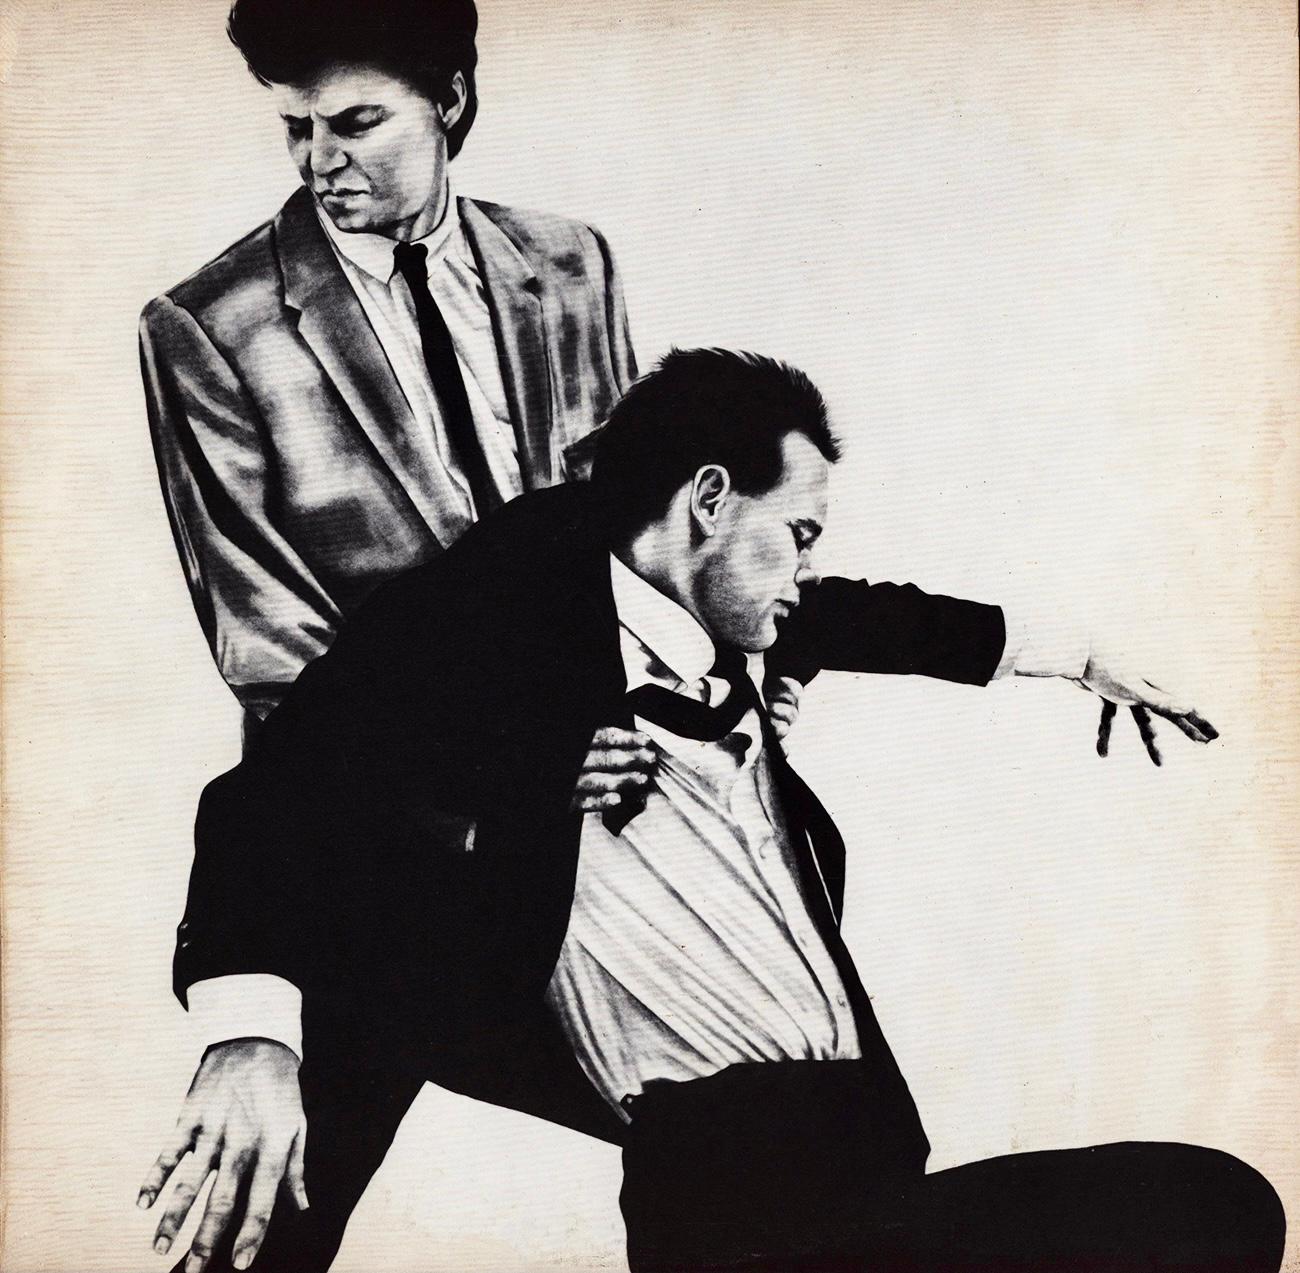 1981 album cover